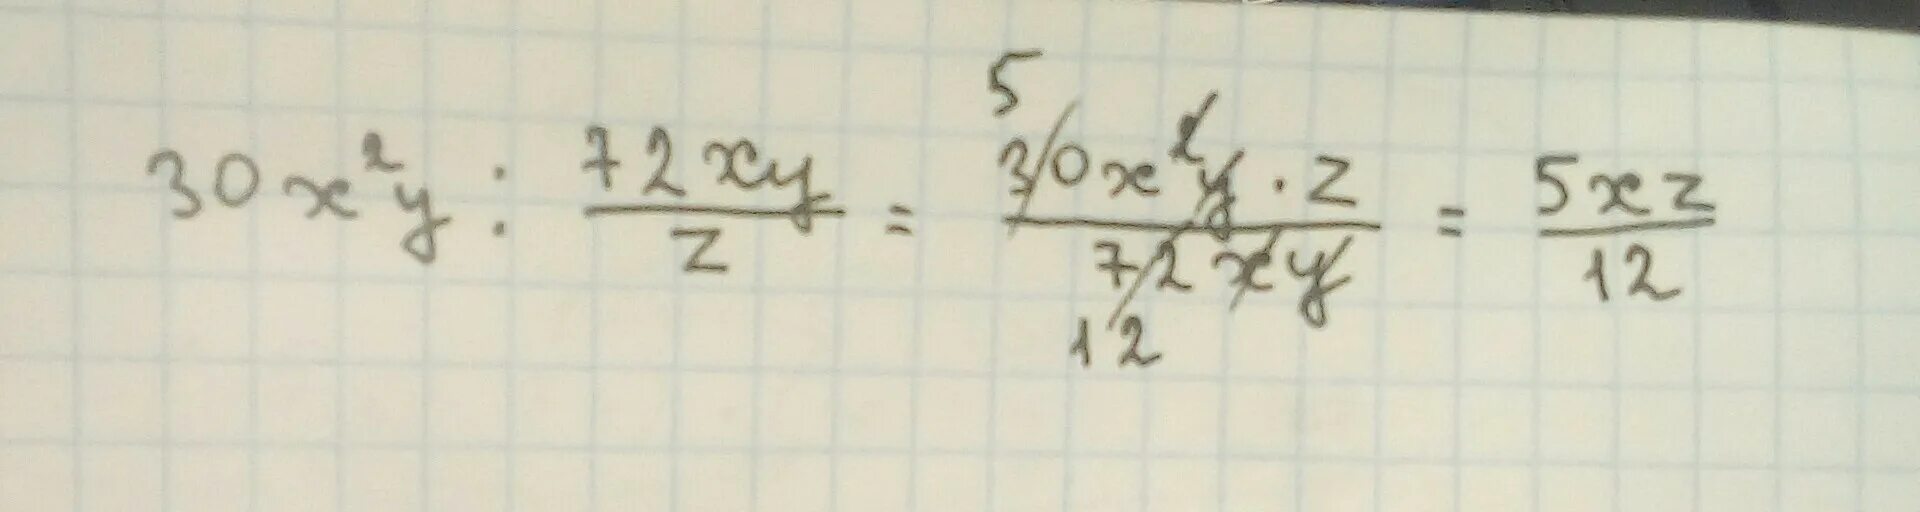 Z z div y. 30x2y 72xy/z. 30xy : 72xy/z. Представьте в виде дроби 30x2y/72xy/z. 30x^2y×z/1×72xy.